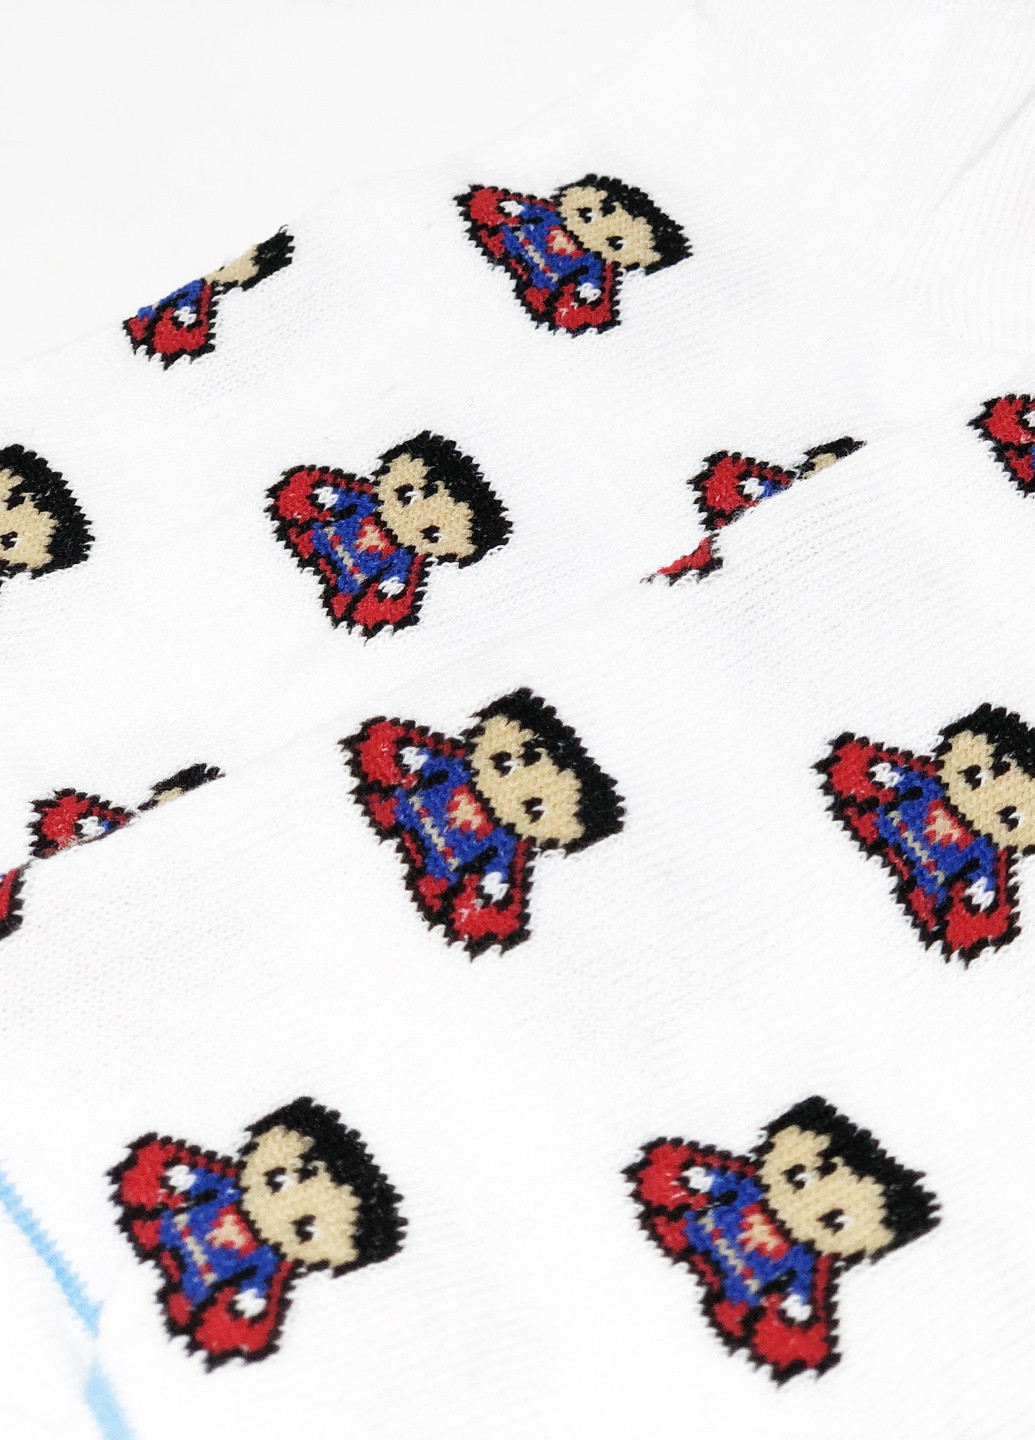 Носки Superman короткие Rock'n'socks (211258857)